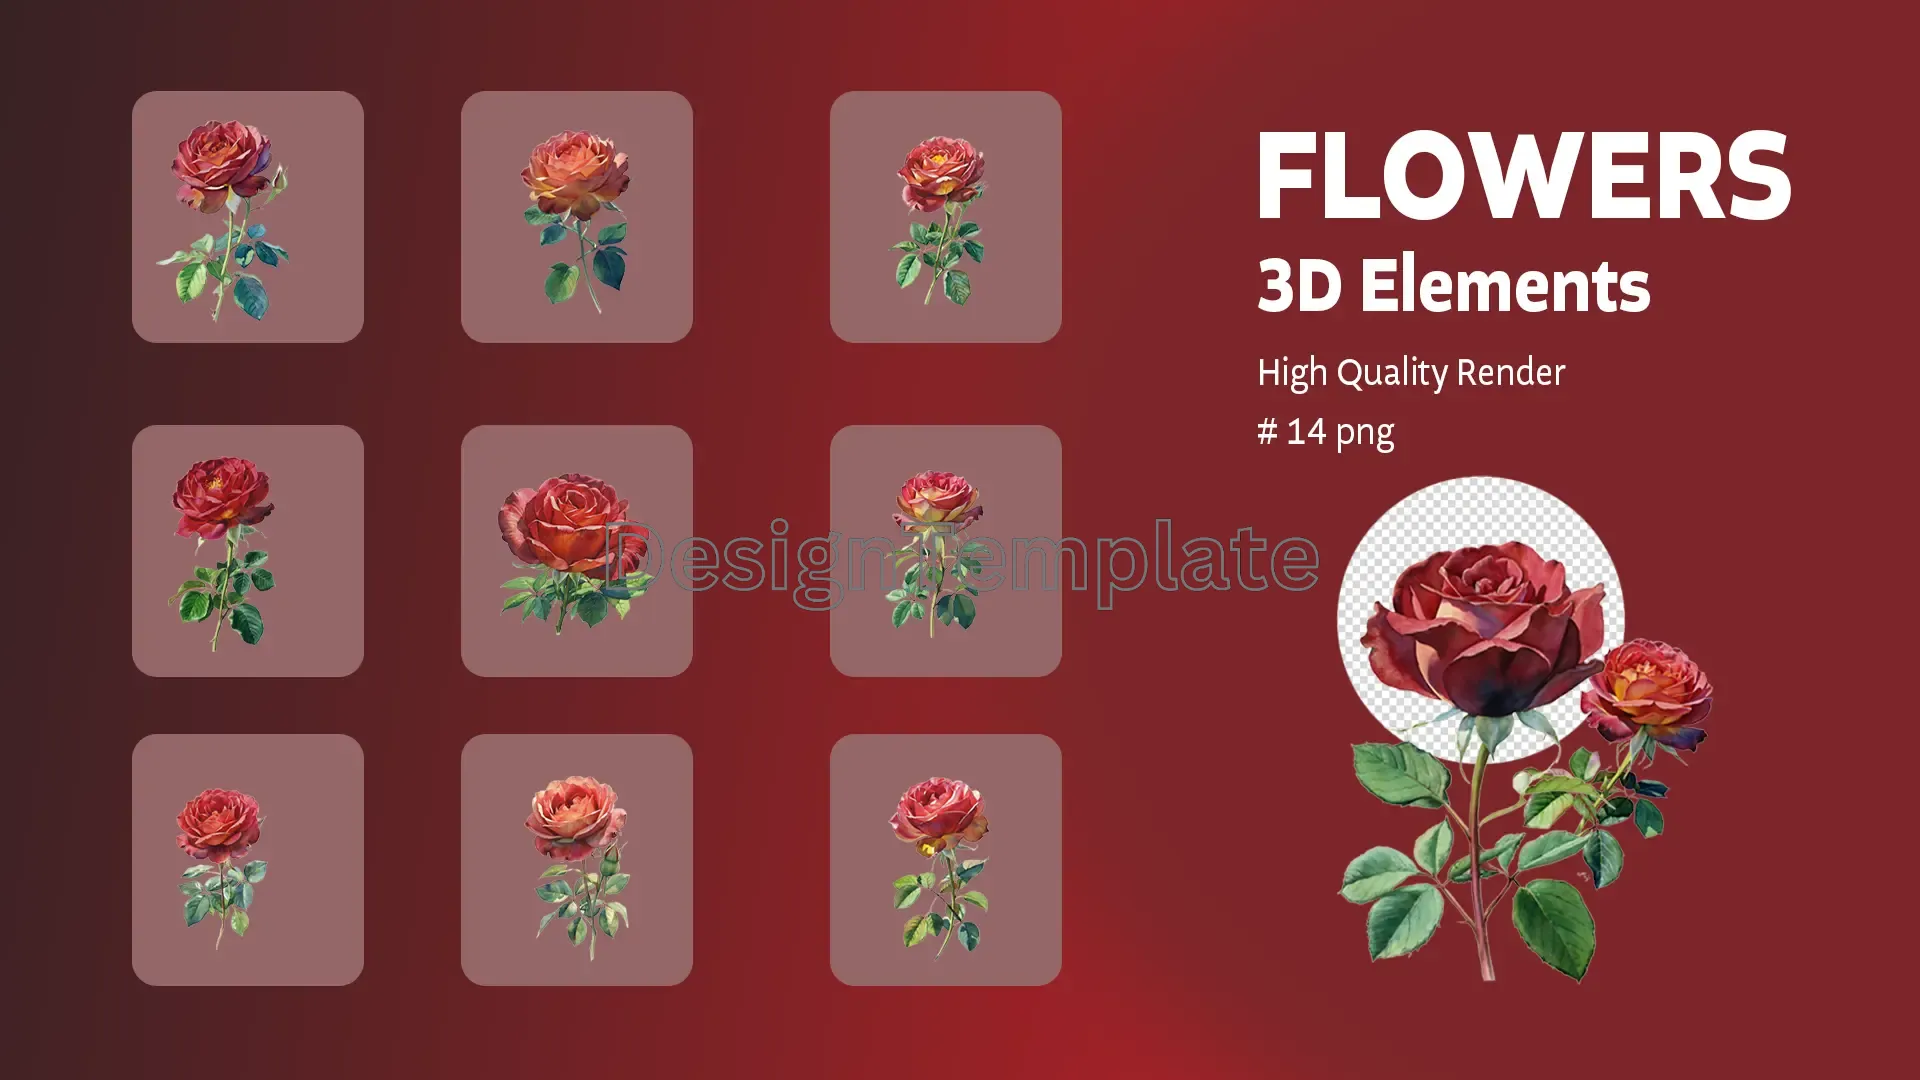 Florist's Fantasy Exquisite Flowers 3D Elements Pack